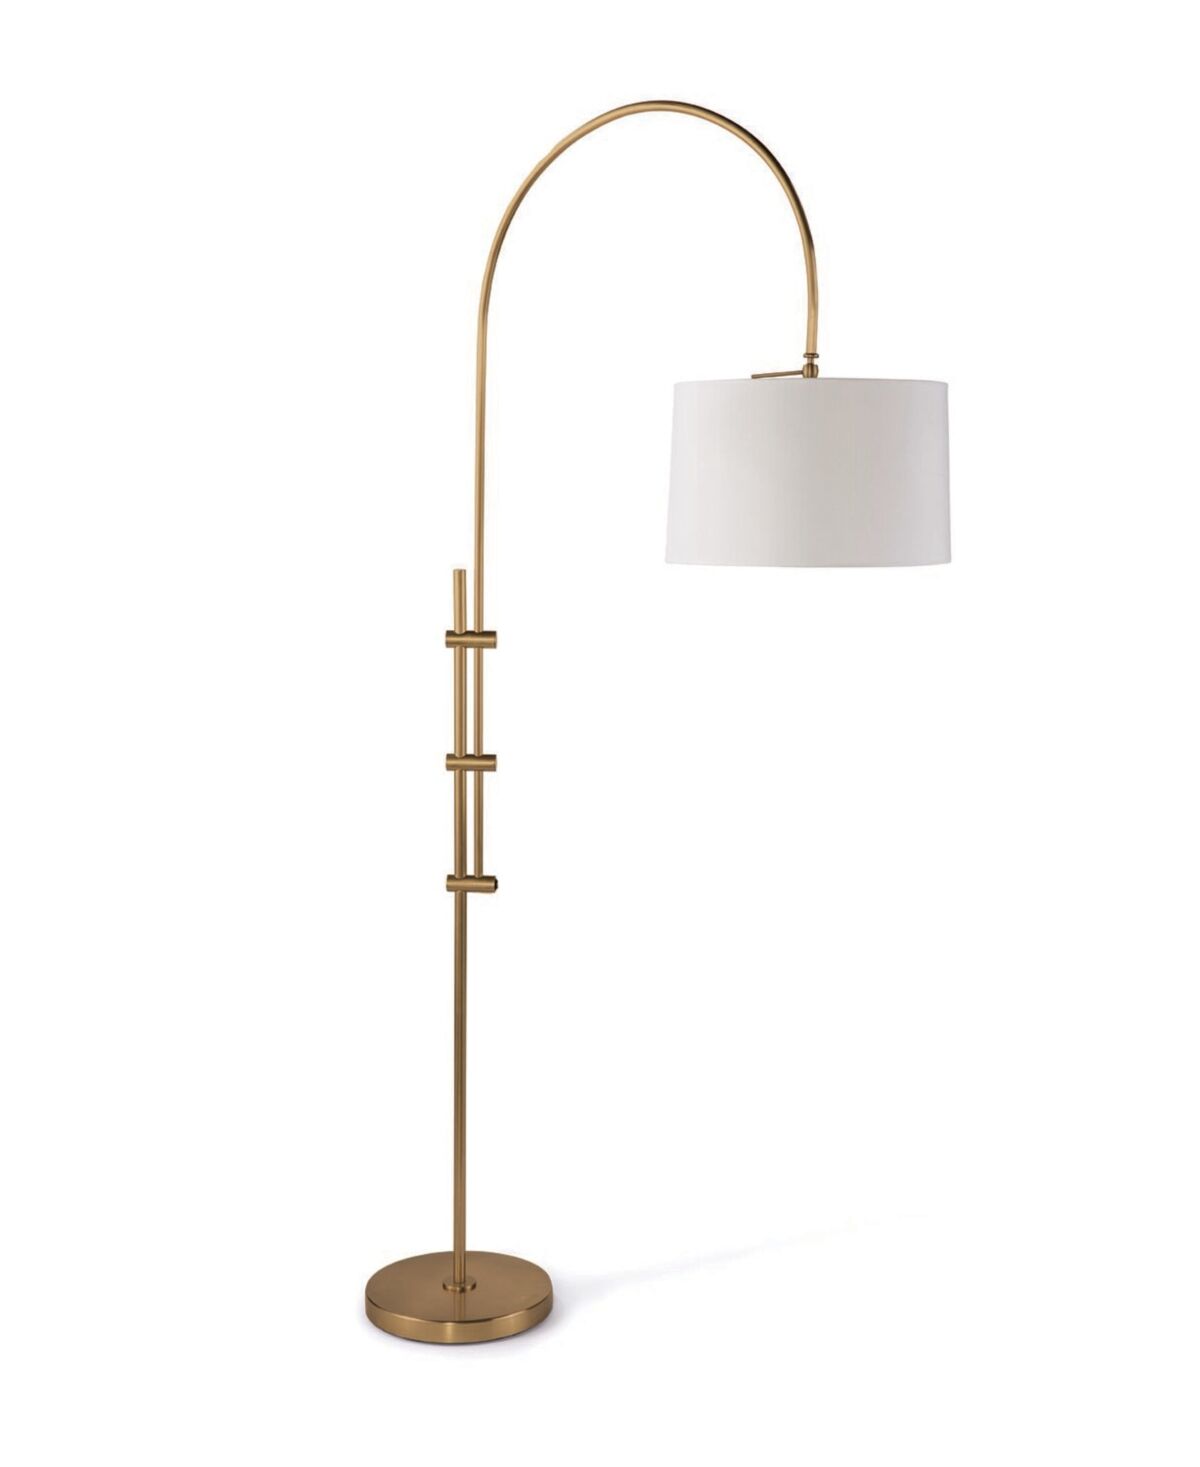 Regina Andrew Design Regina Andrew Arc Floor Lamp with Fabric Shade - Brass